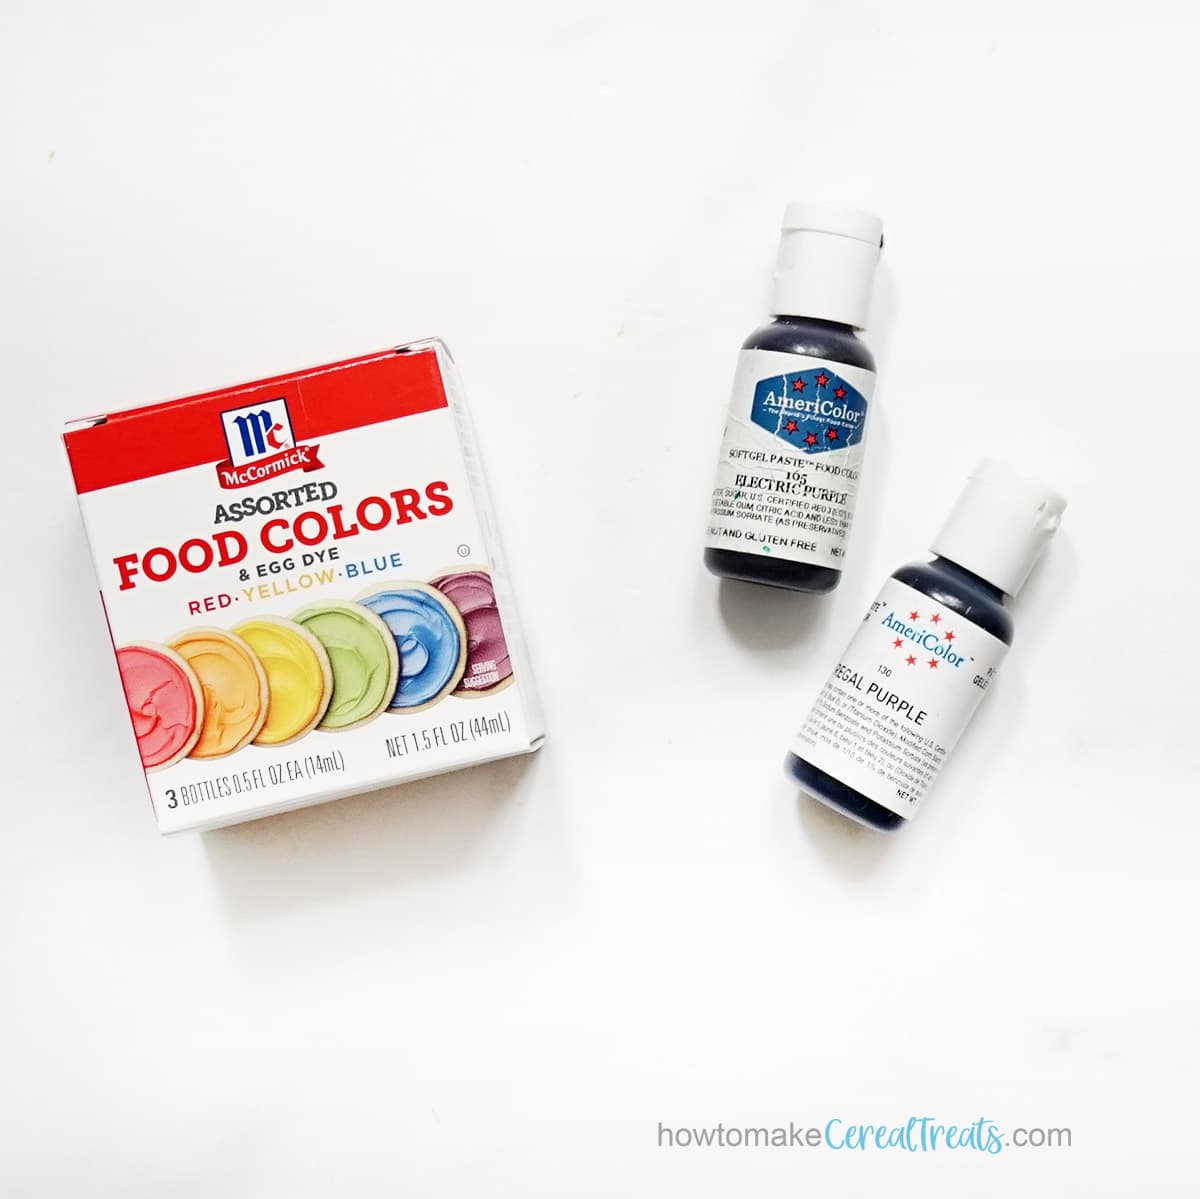 Purple liquid and gel paste food coloring